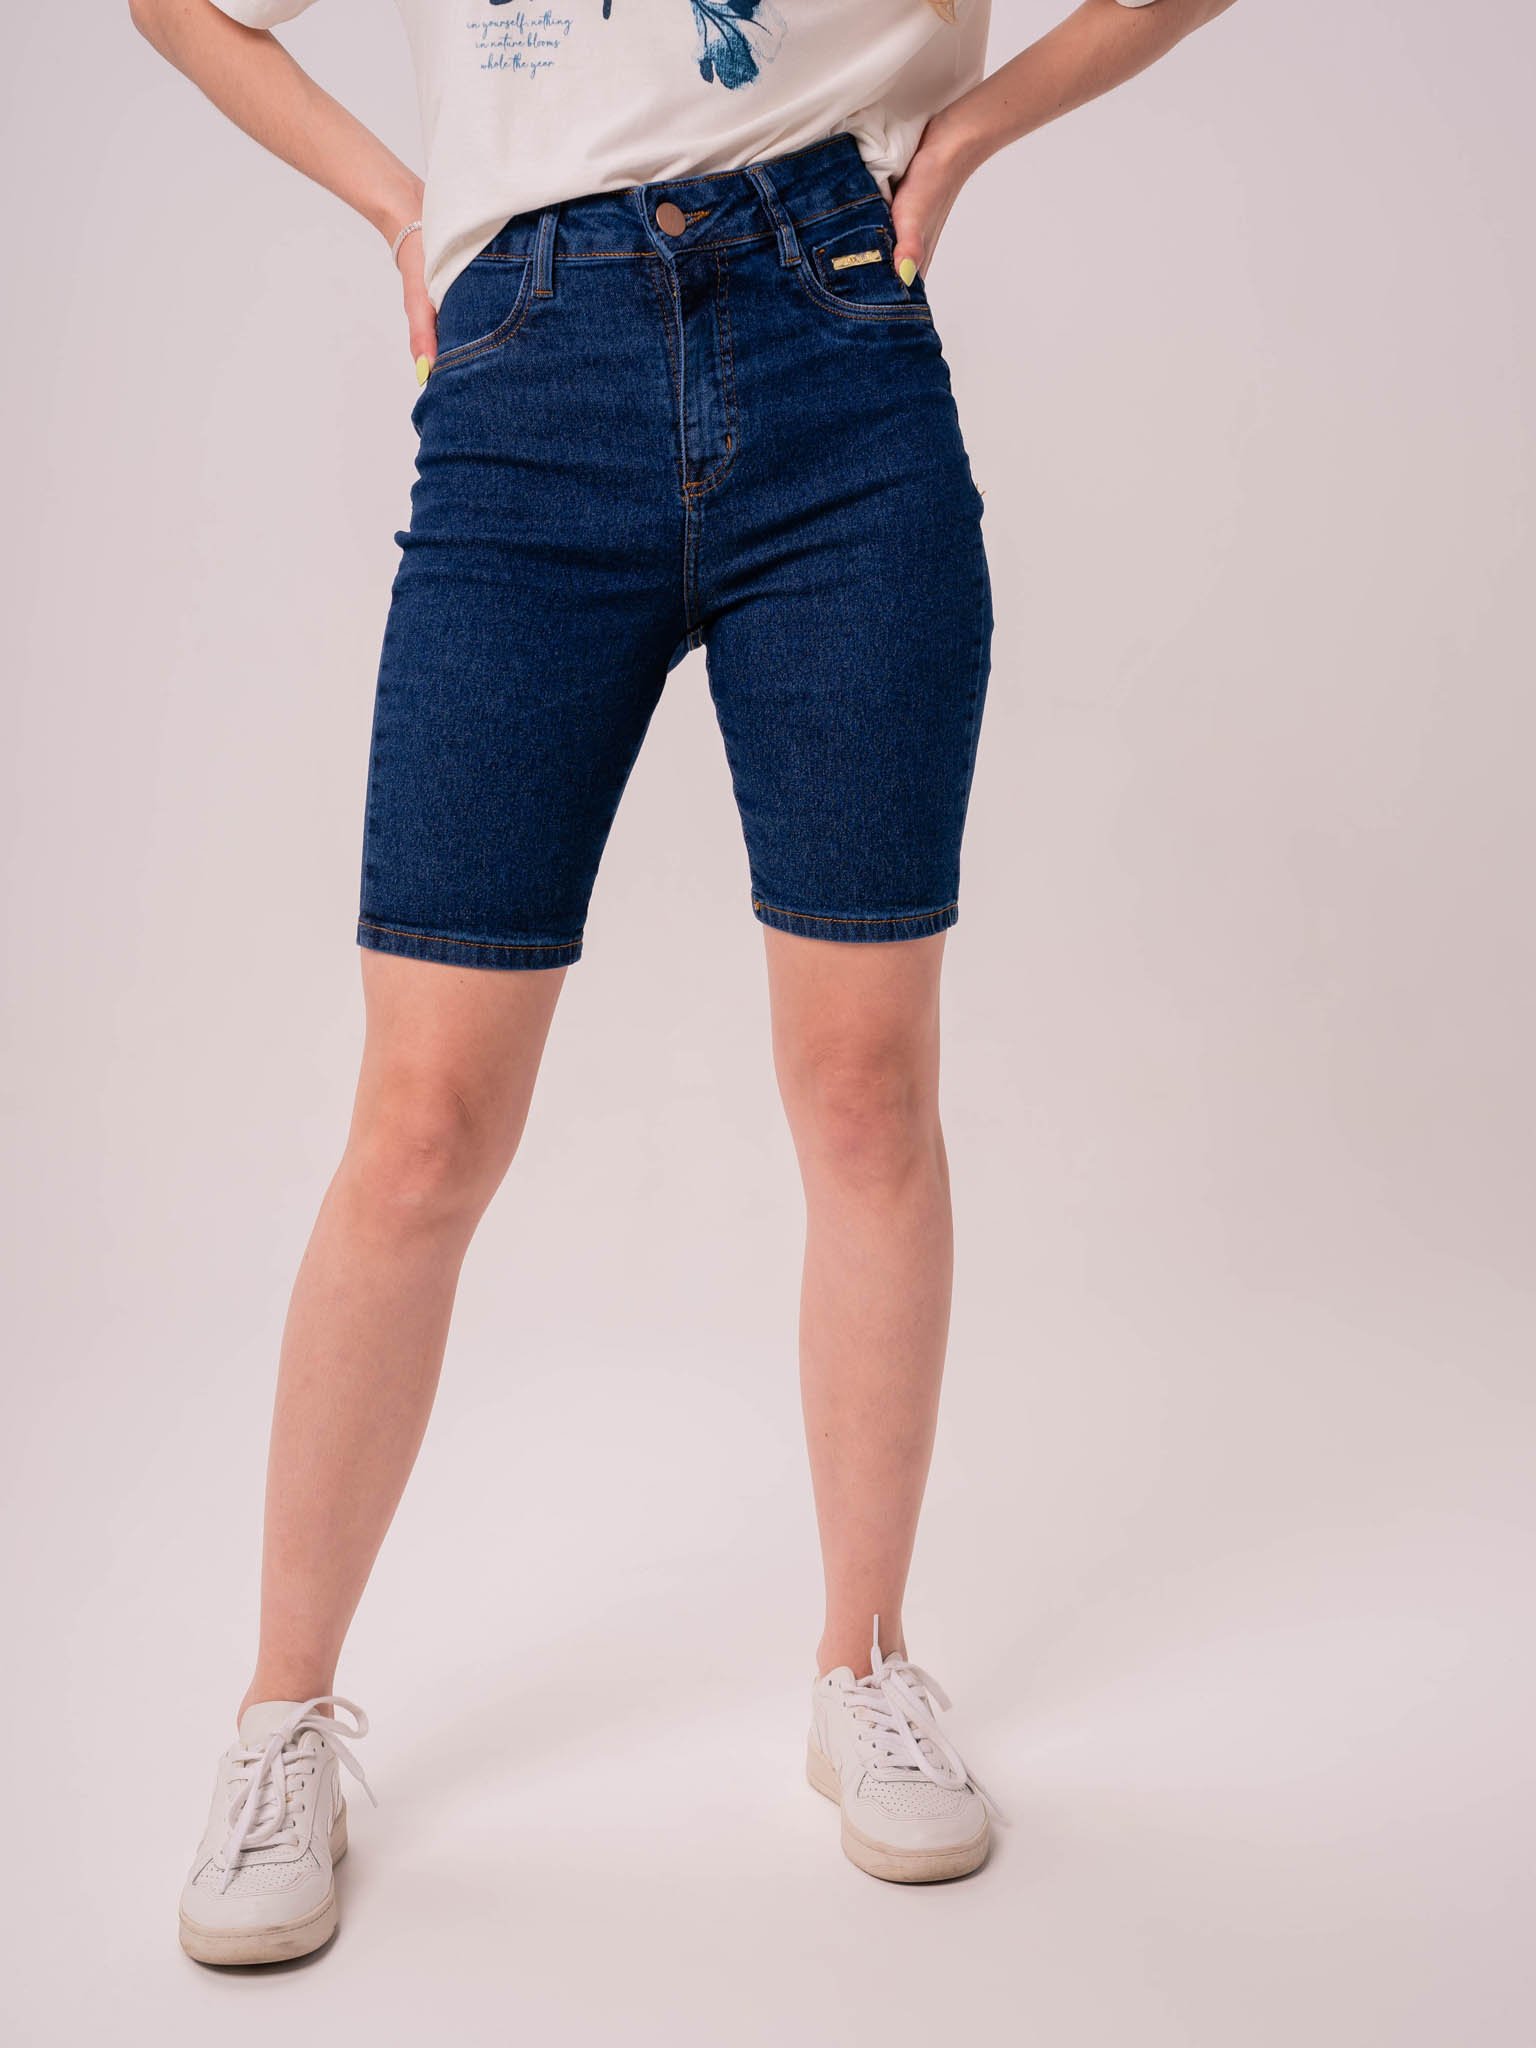 https://cdn.dooca.store/212/products/bermuda-biker-jeans-tradicional-escura-cintura-alta-justa-3.jpg?v=1671128920&webp=0